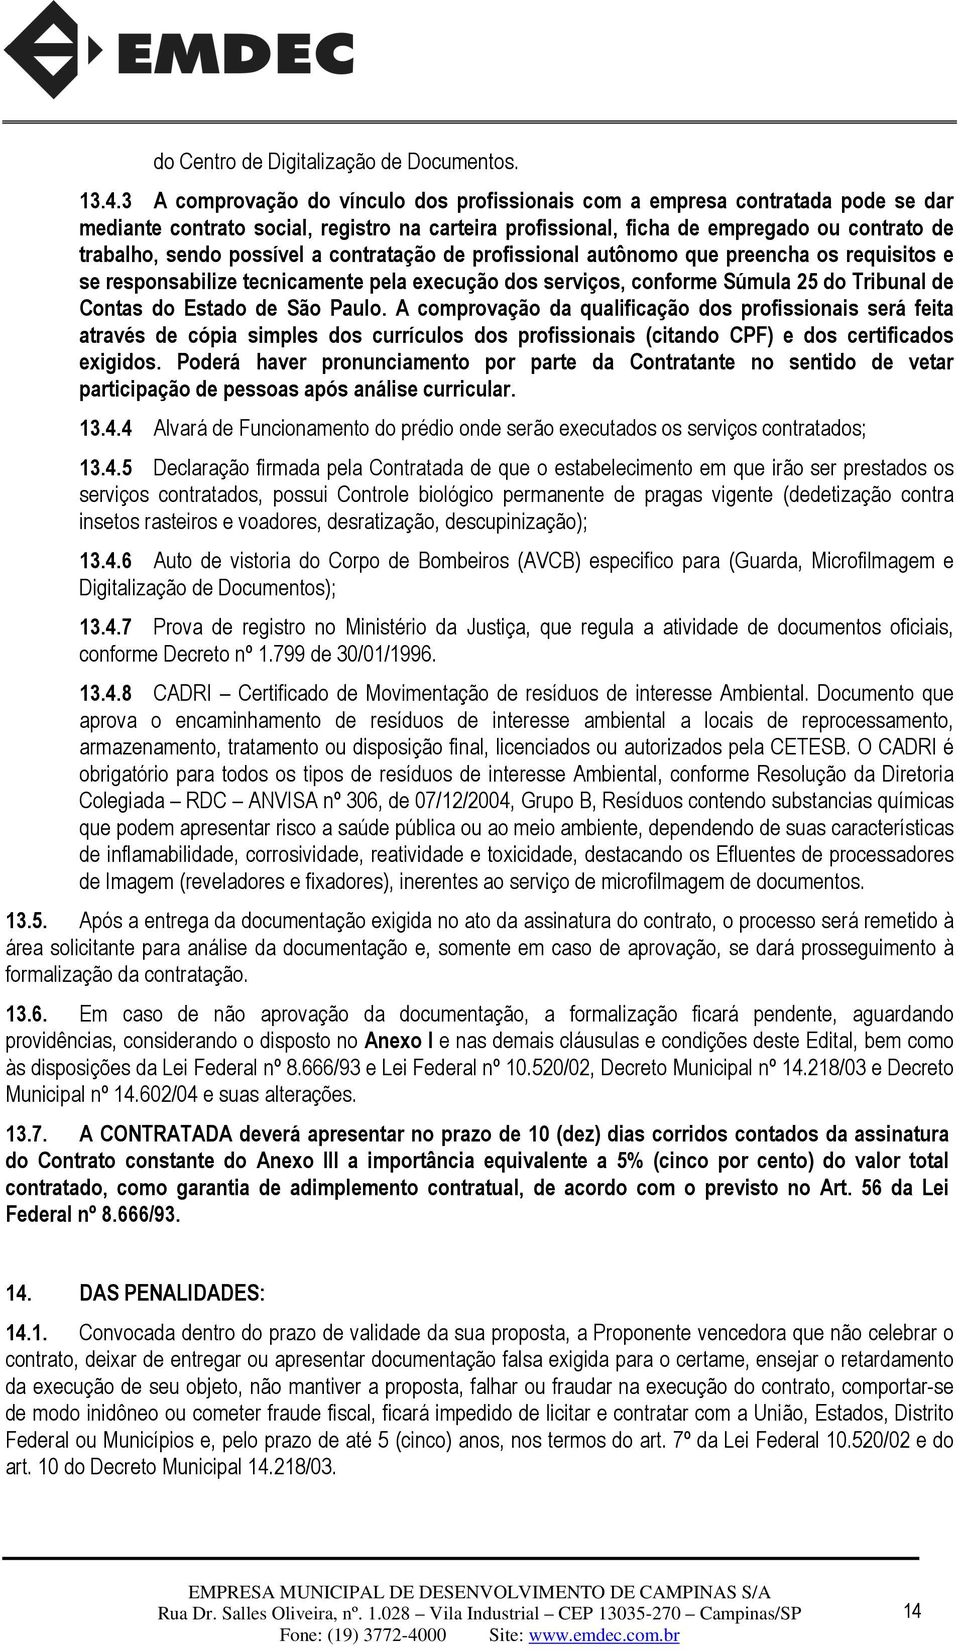 possível a contratação de profissional autônomo que preencha os requisitos e se responsabilize tecnicamente pela execução dos serviços, conforme Súmula 25 do Tribunal de Contas do Estado de São Paulo.